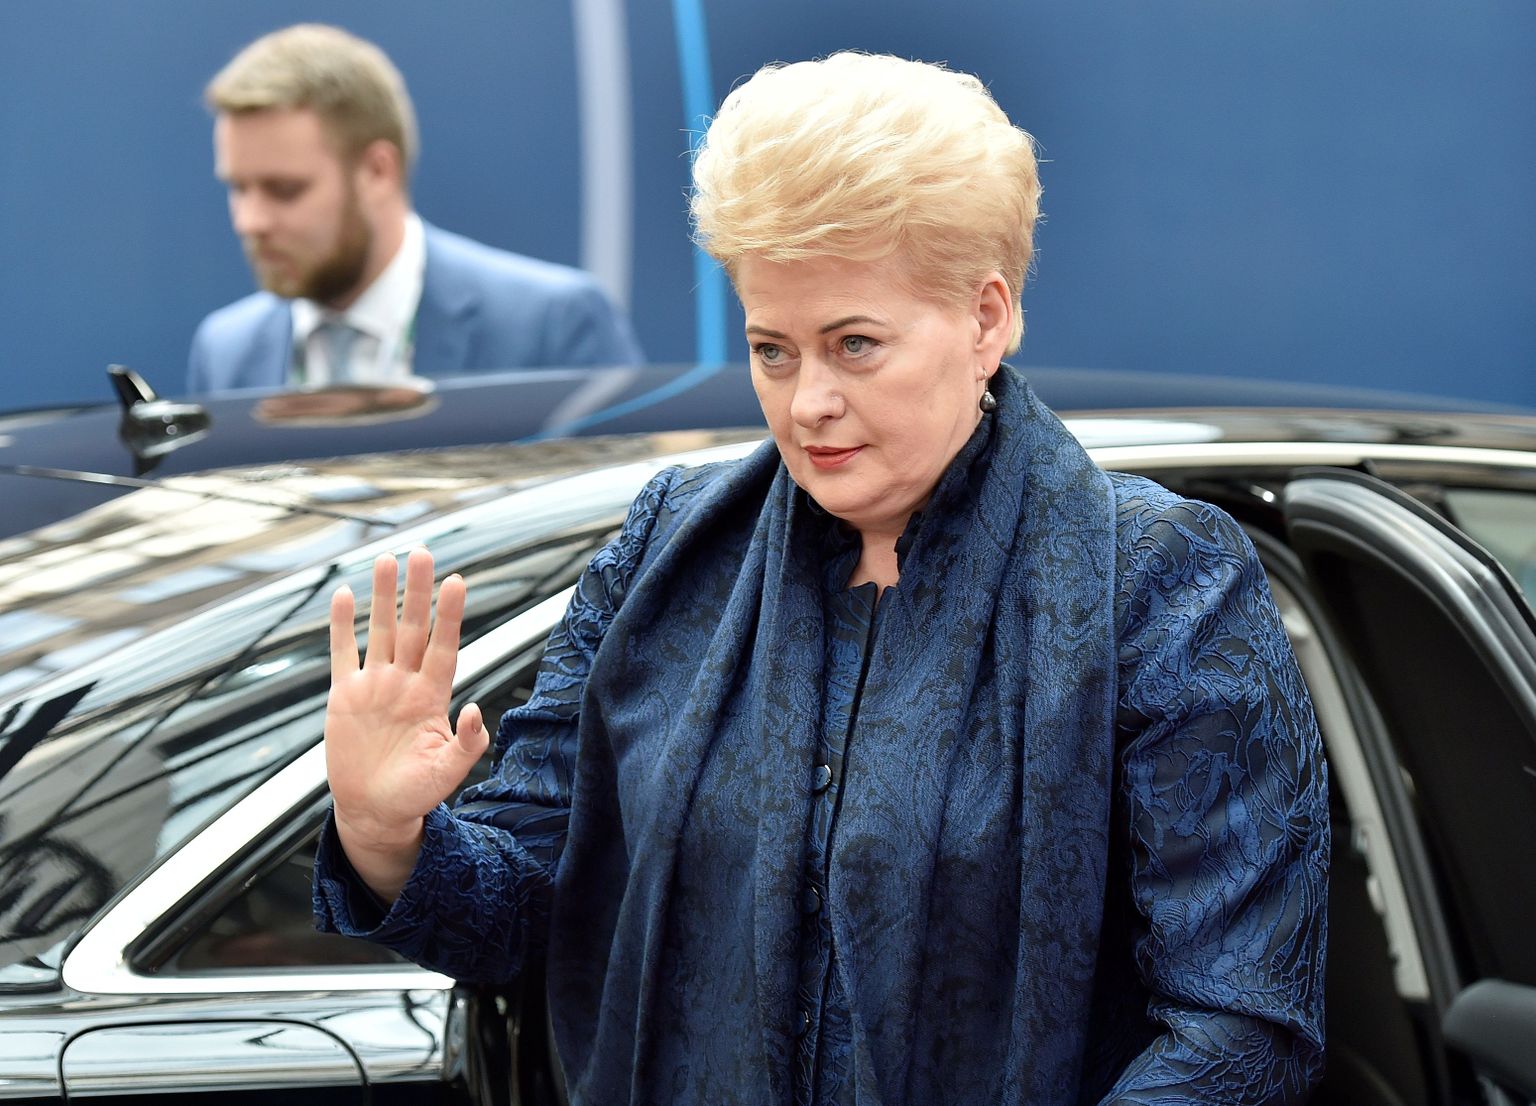 Dalia Grybauskaité